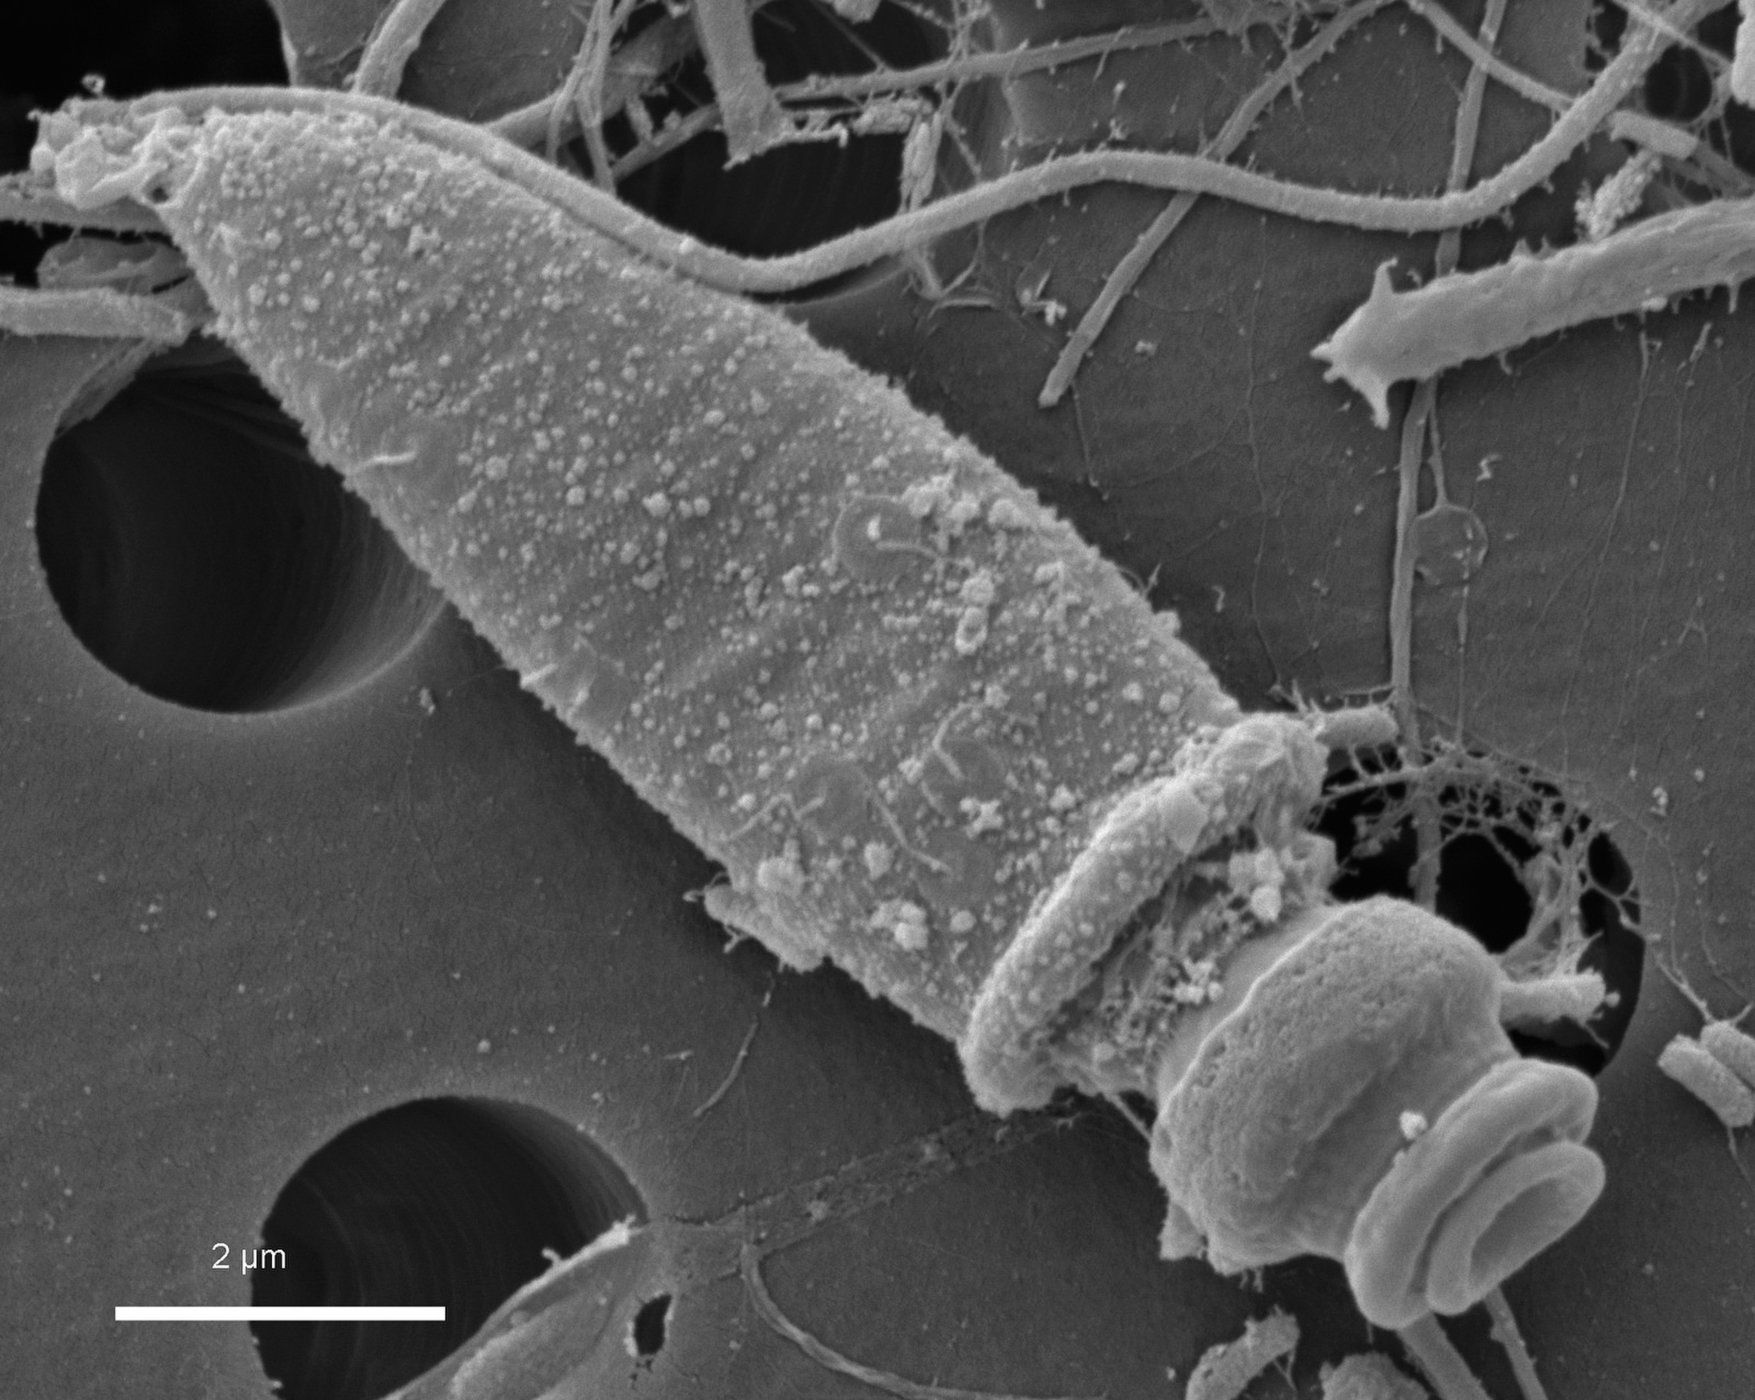 Стреляющий планктон: крохотные организмы орудуют впечатляющей артиллерией - 4